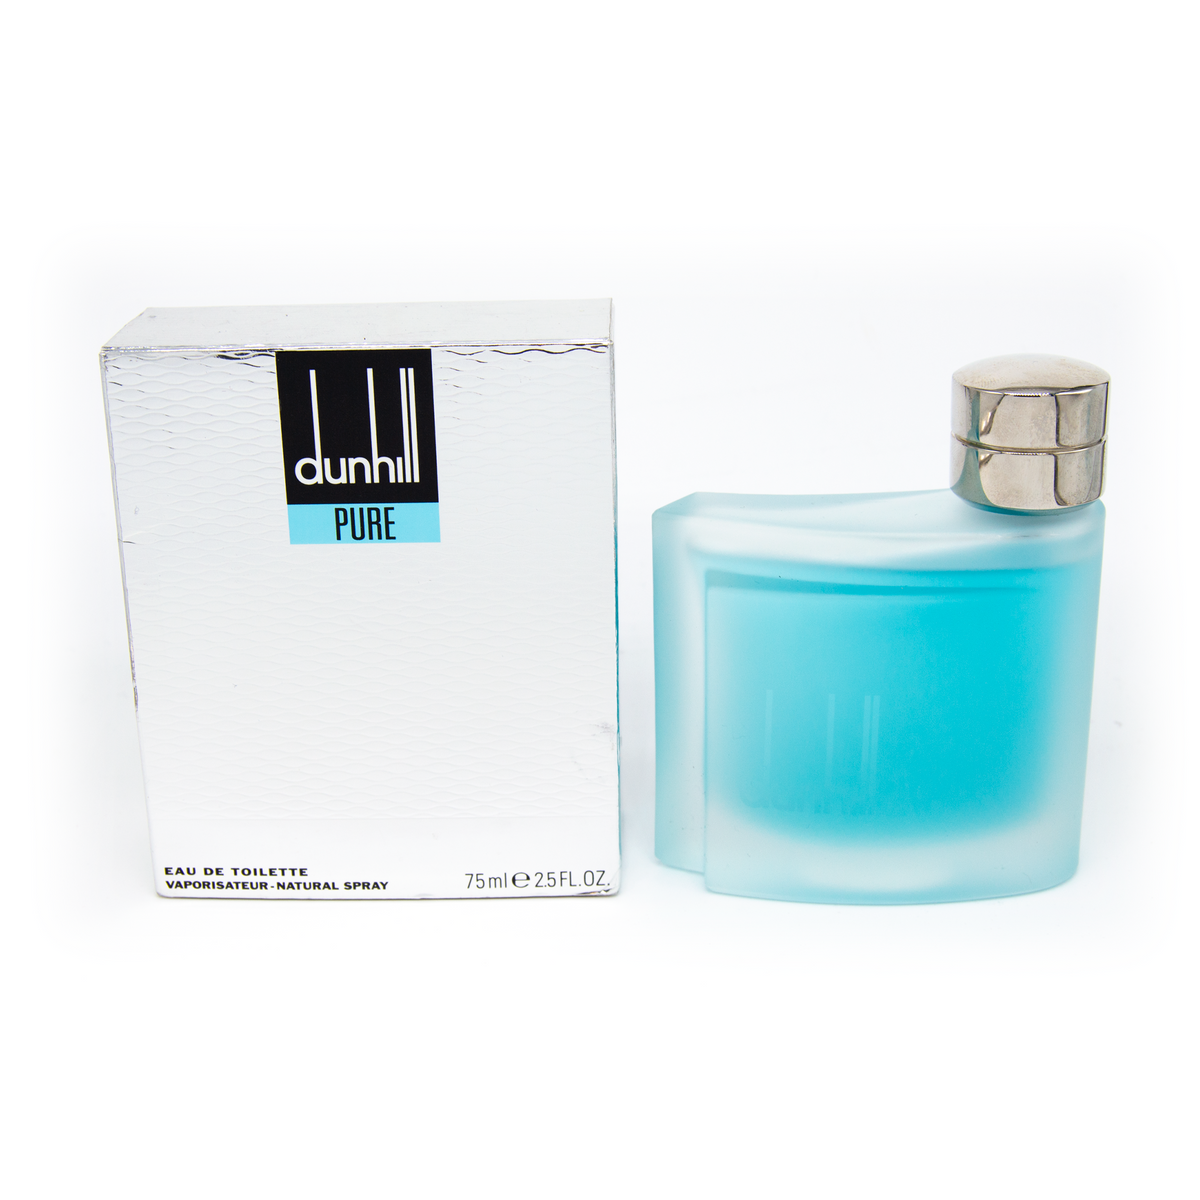 Dunhill Pure – Essence Fragrances Online